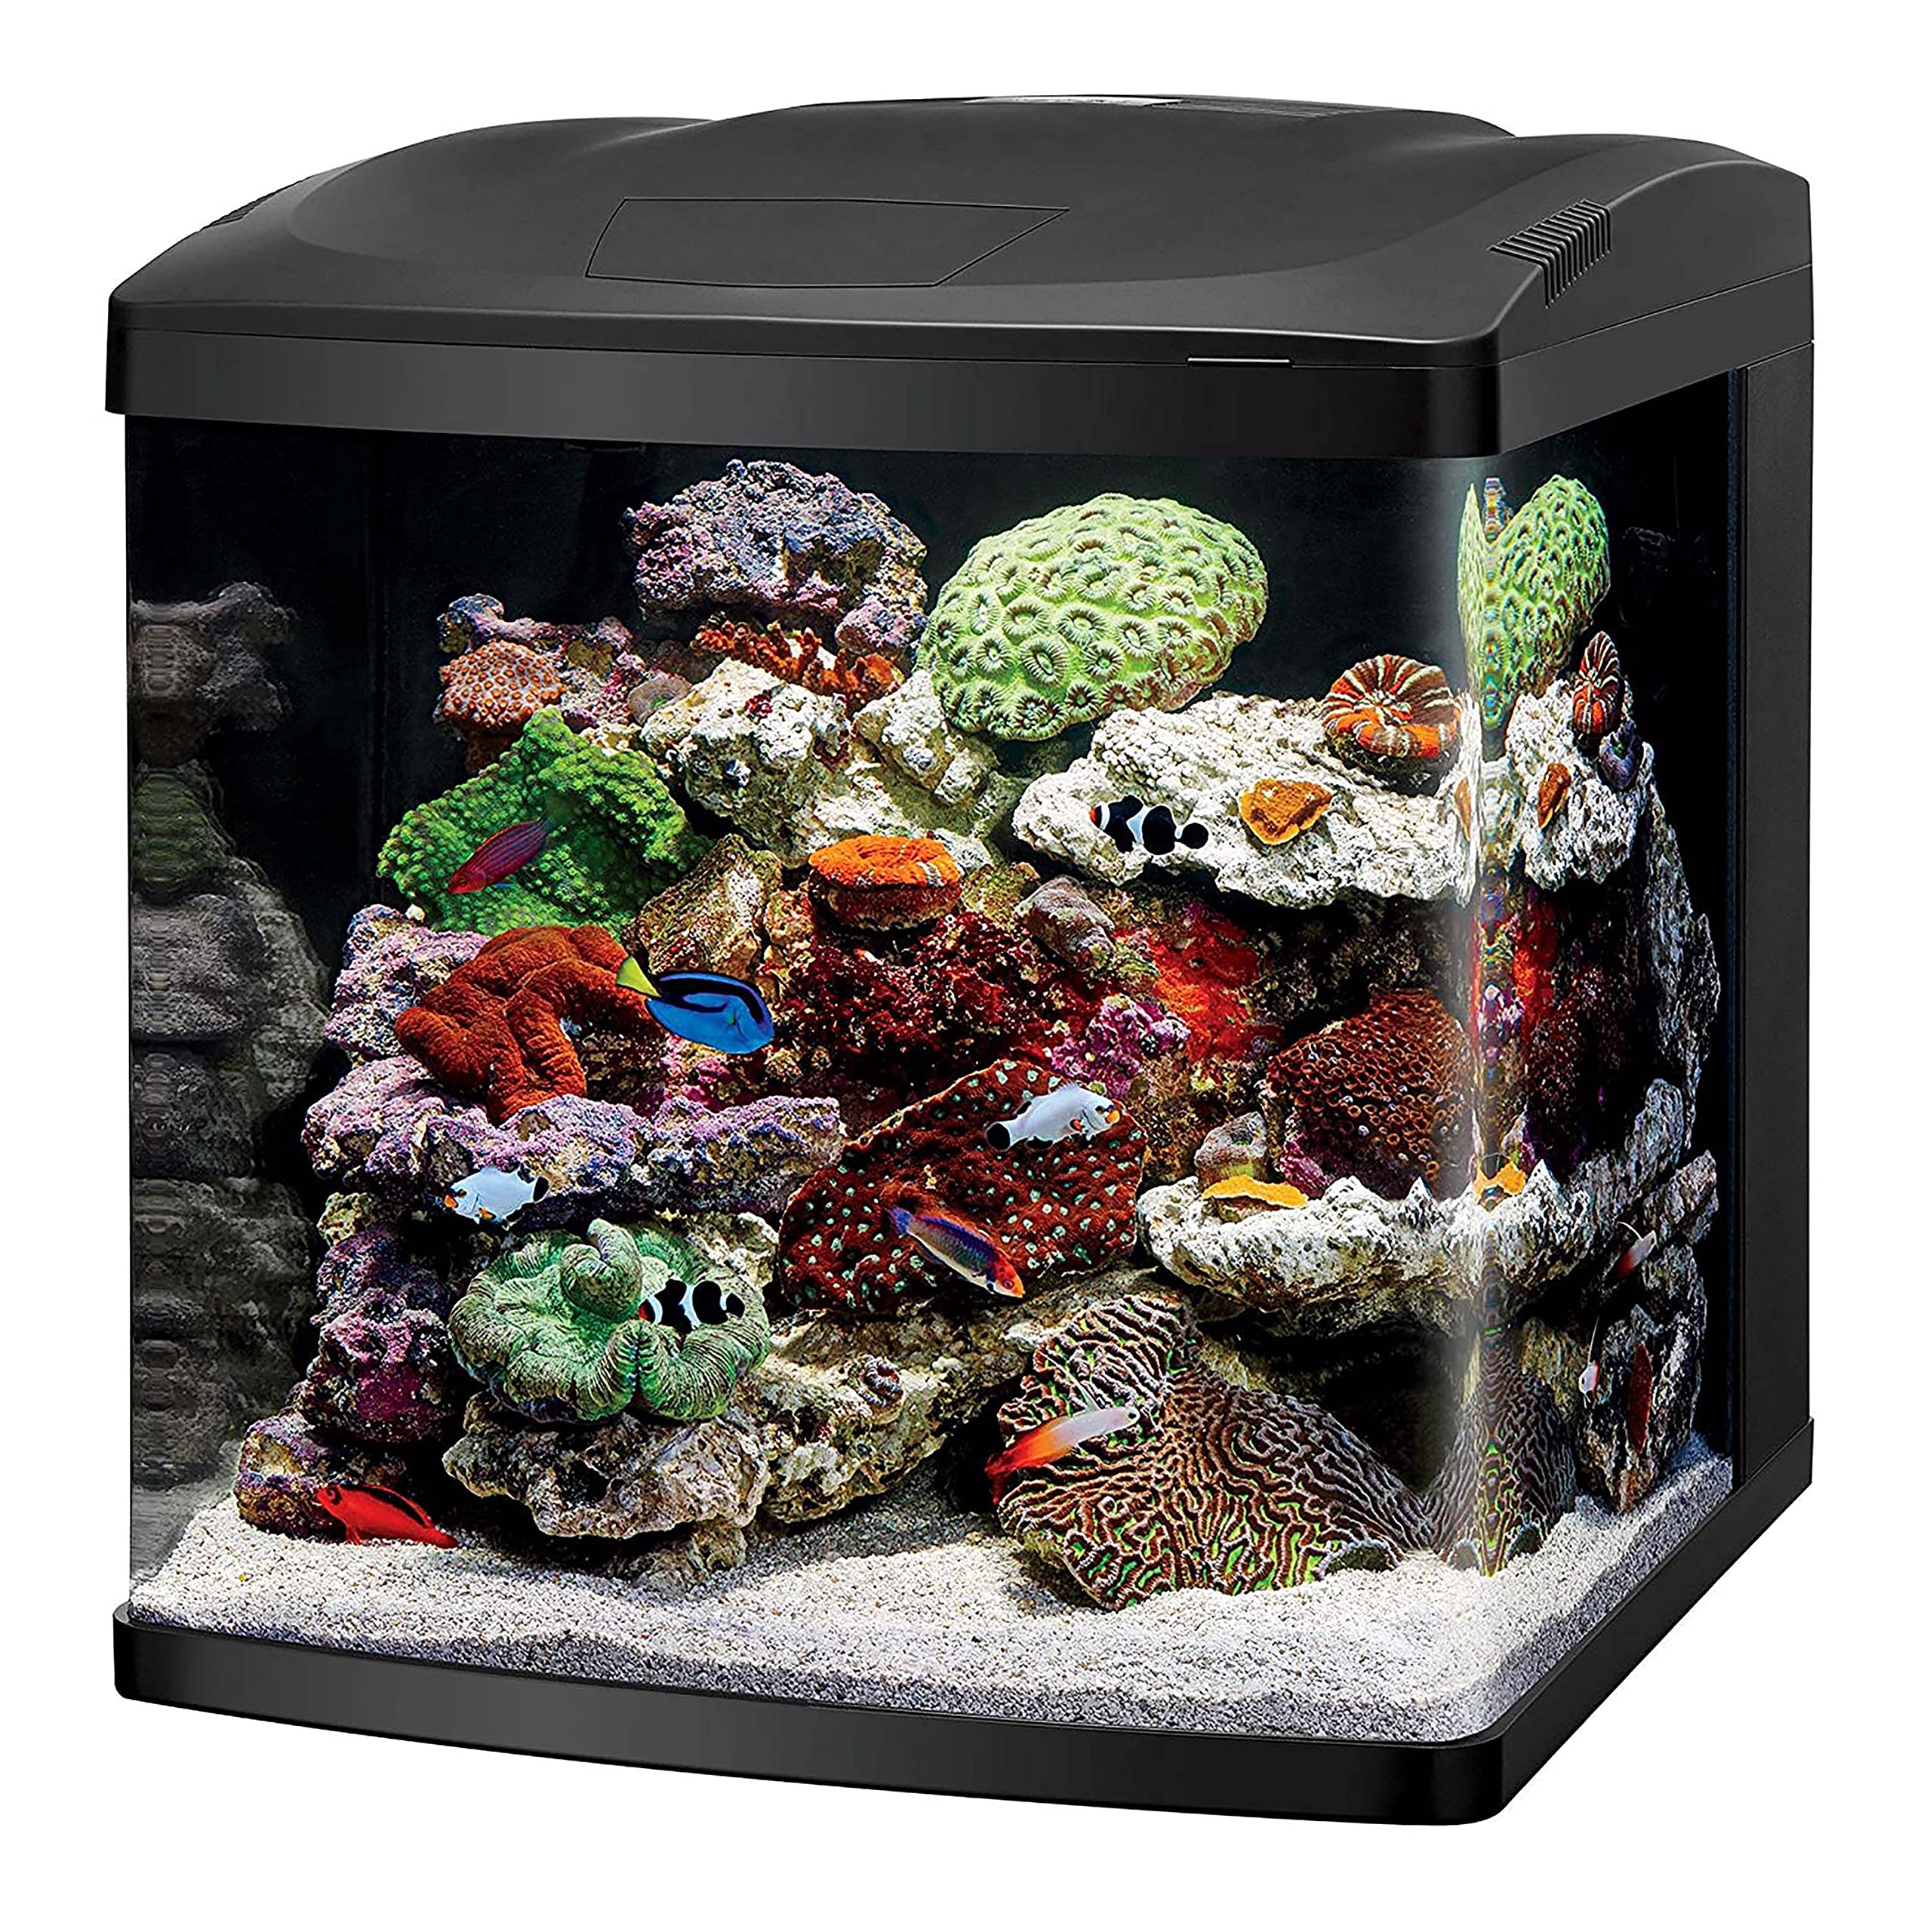 Coralife LED BioCube Aquarium Fish Tank Kit, 32 Gallon